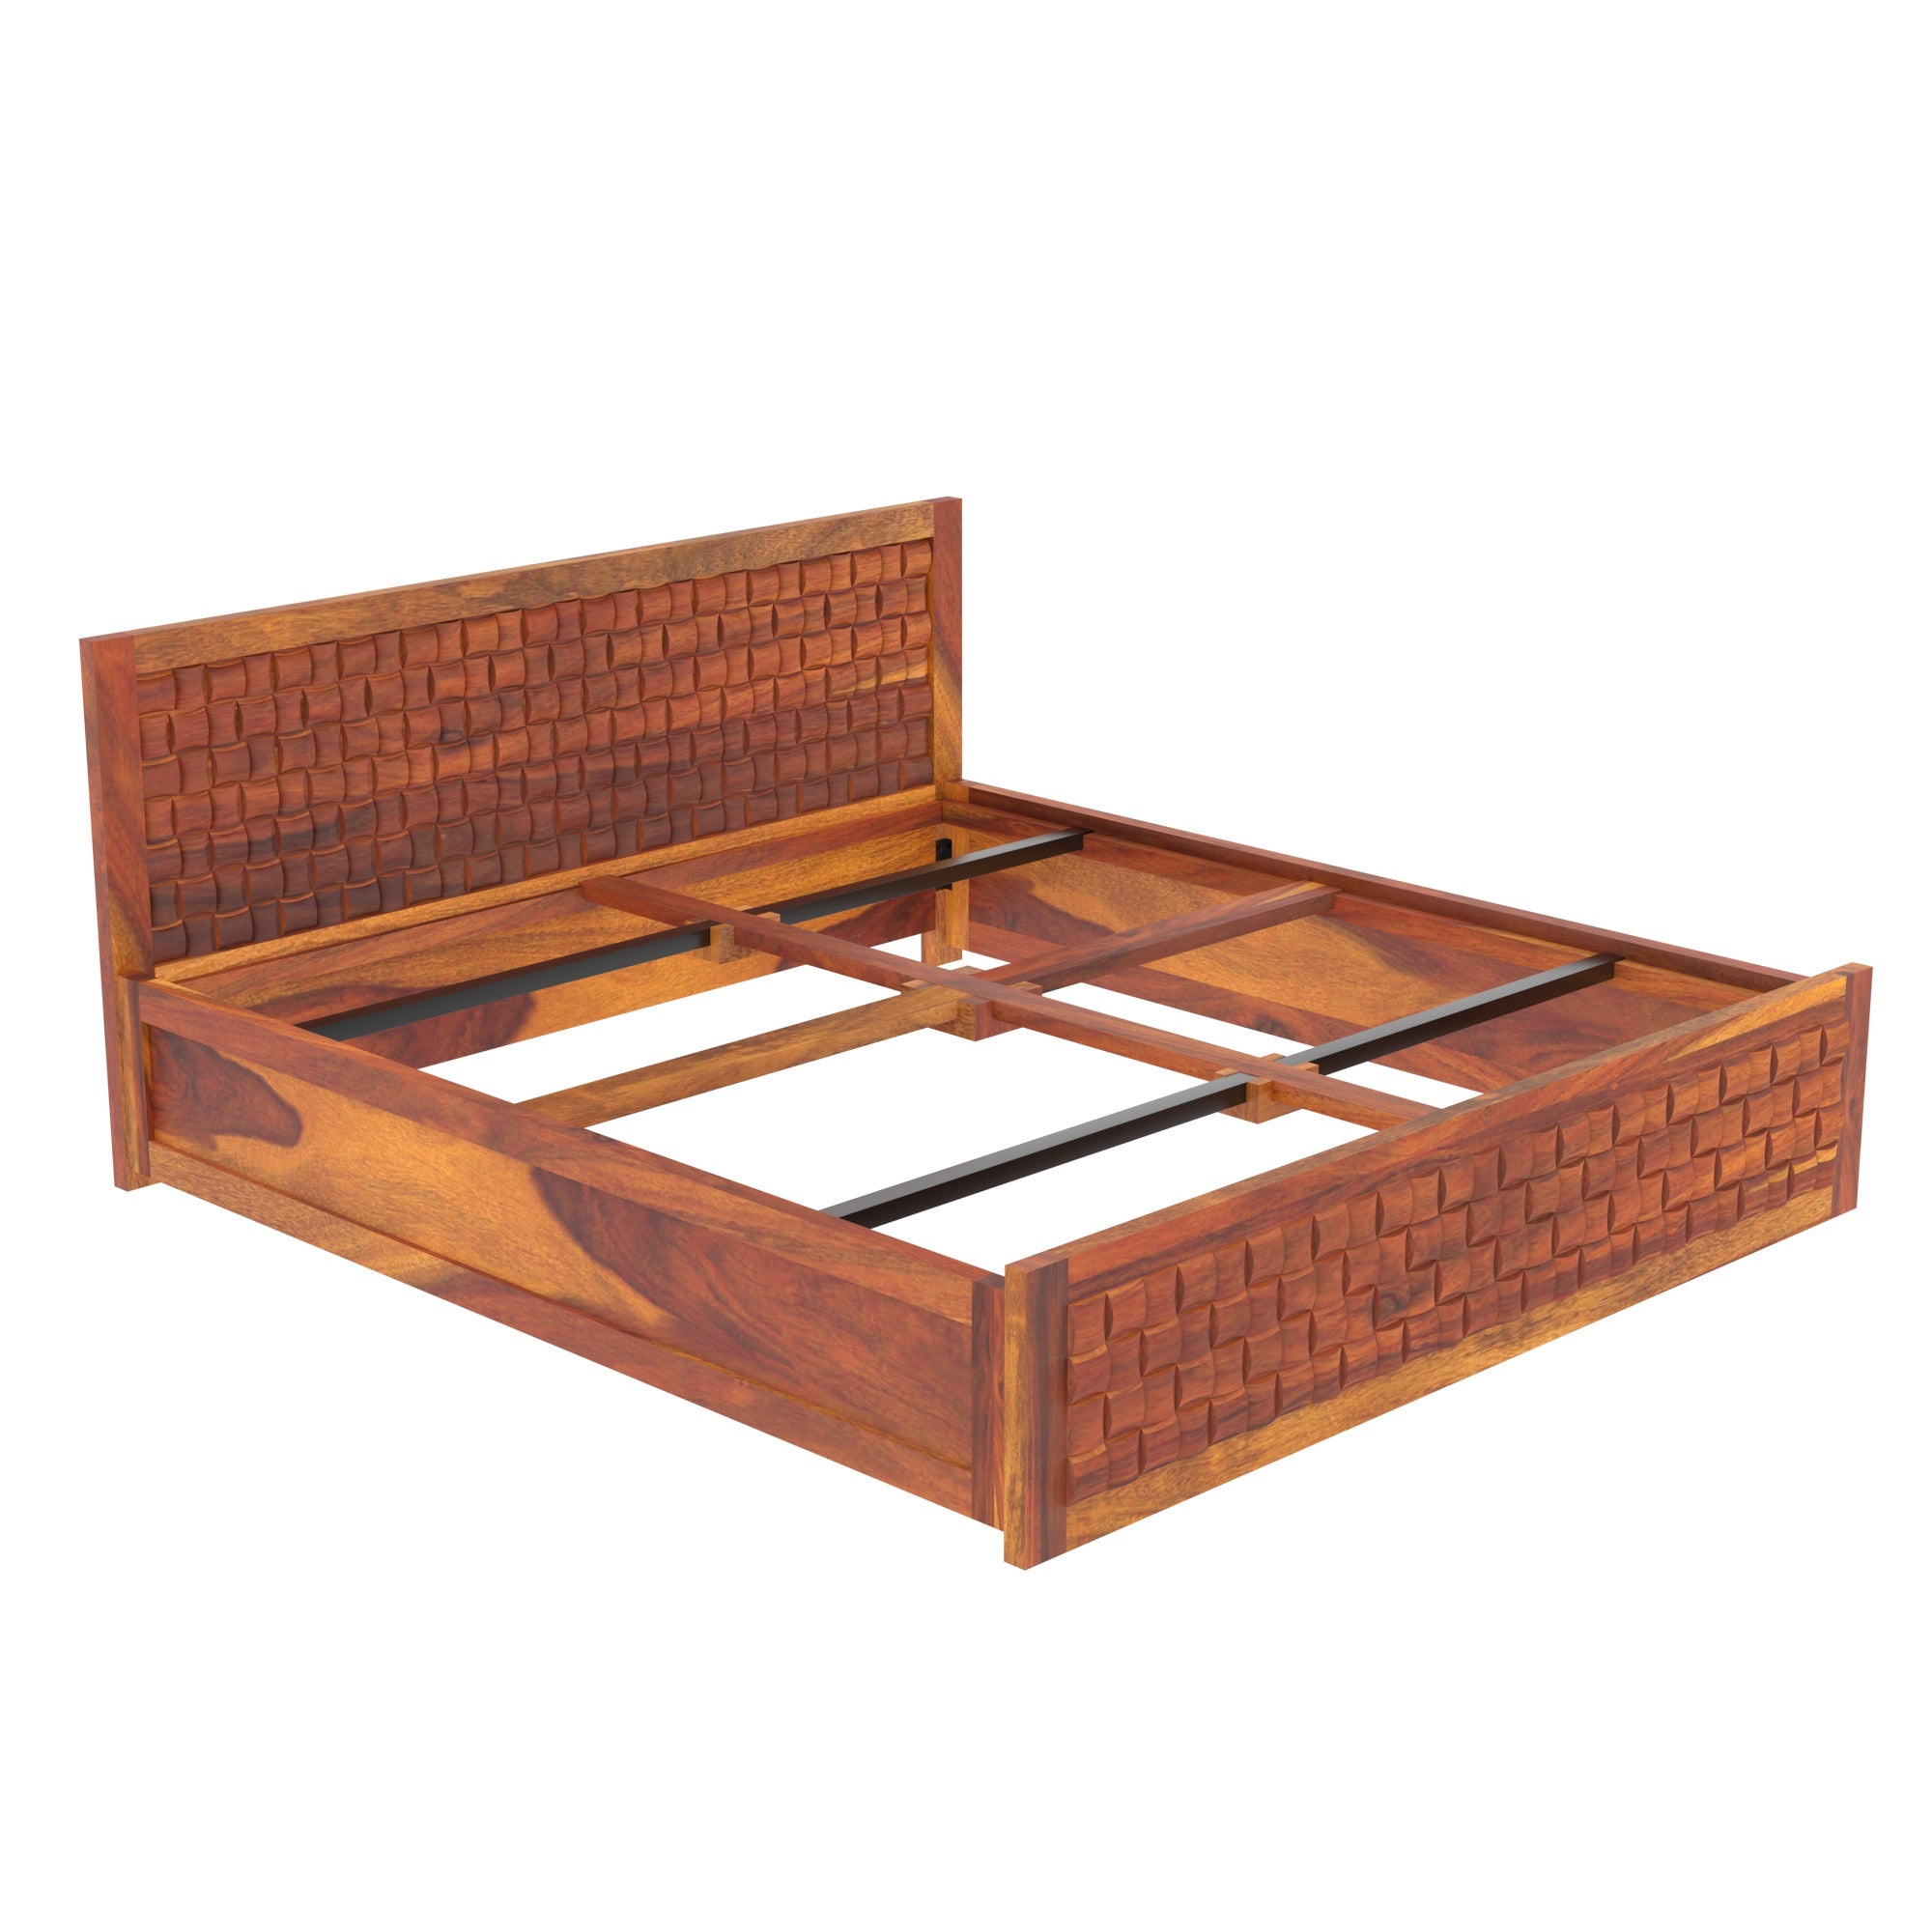 Wooden Regal designed Bed Sheesham Wood Bed